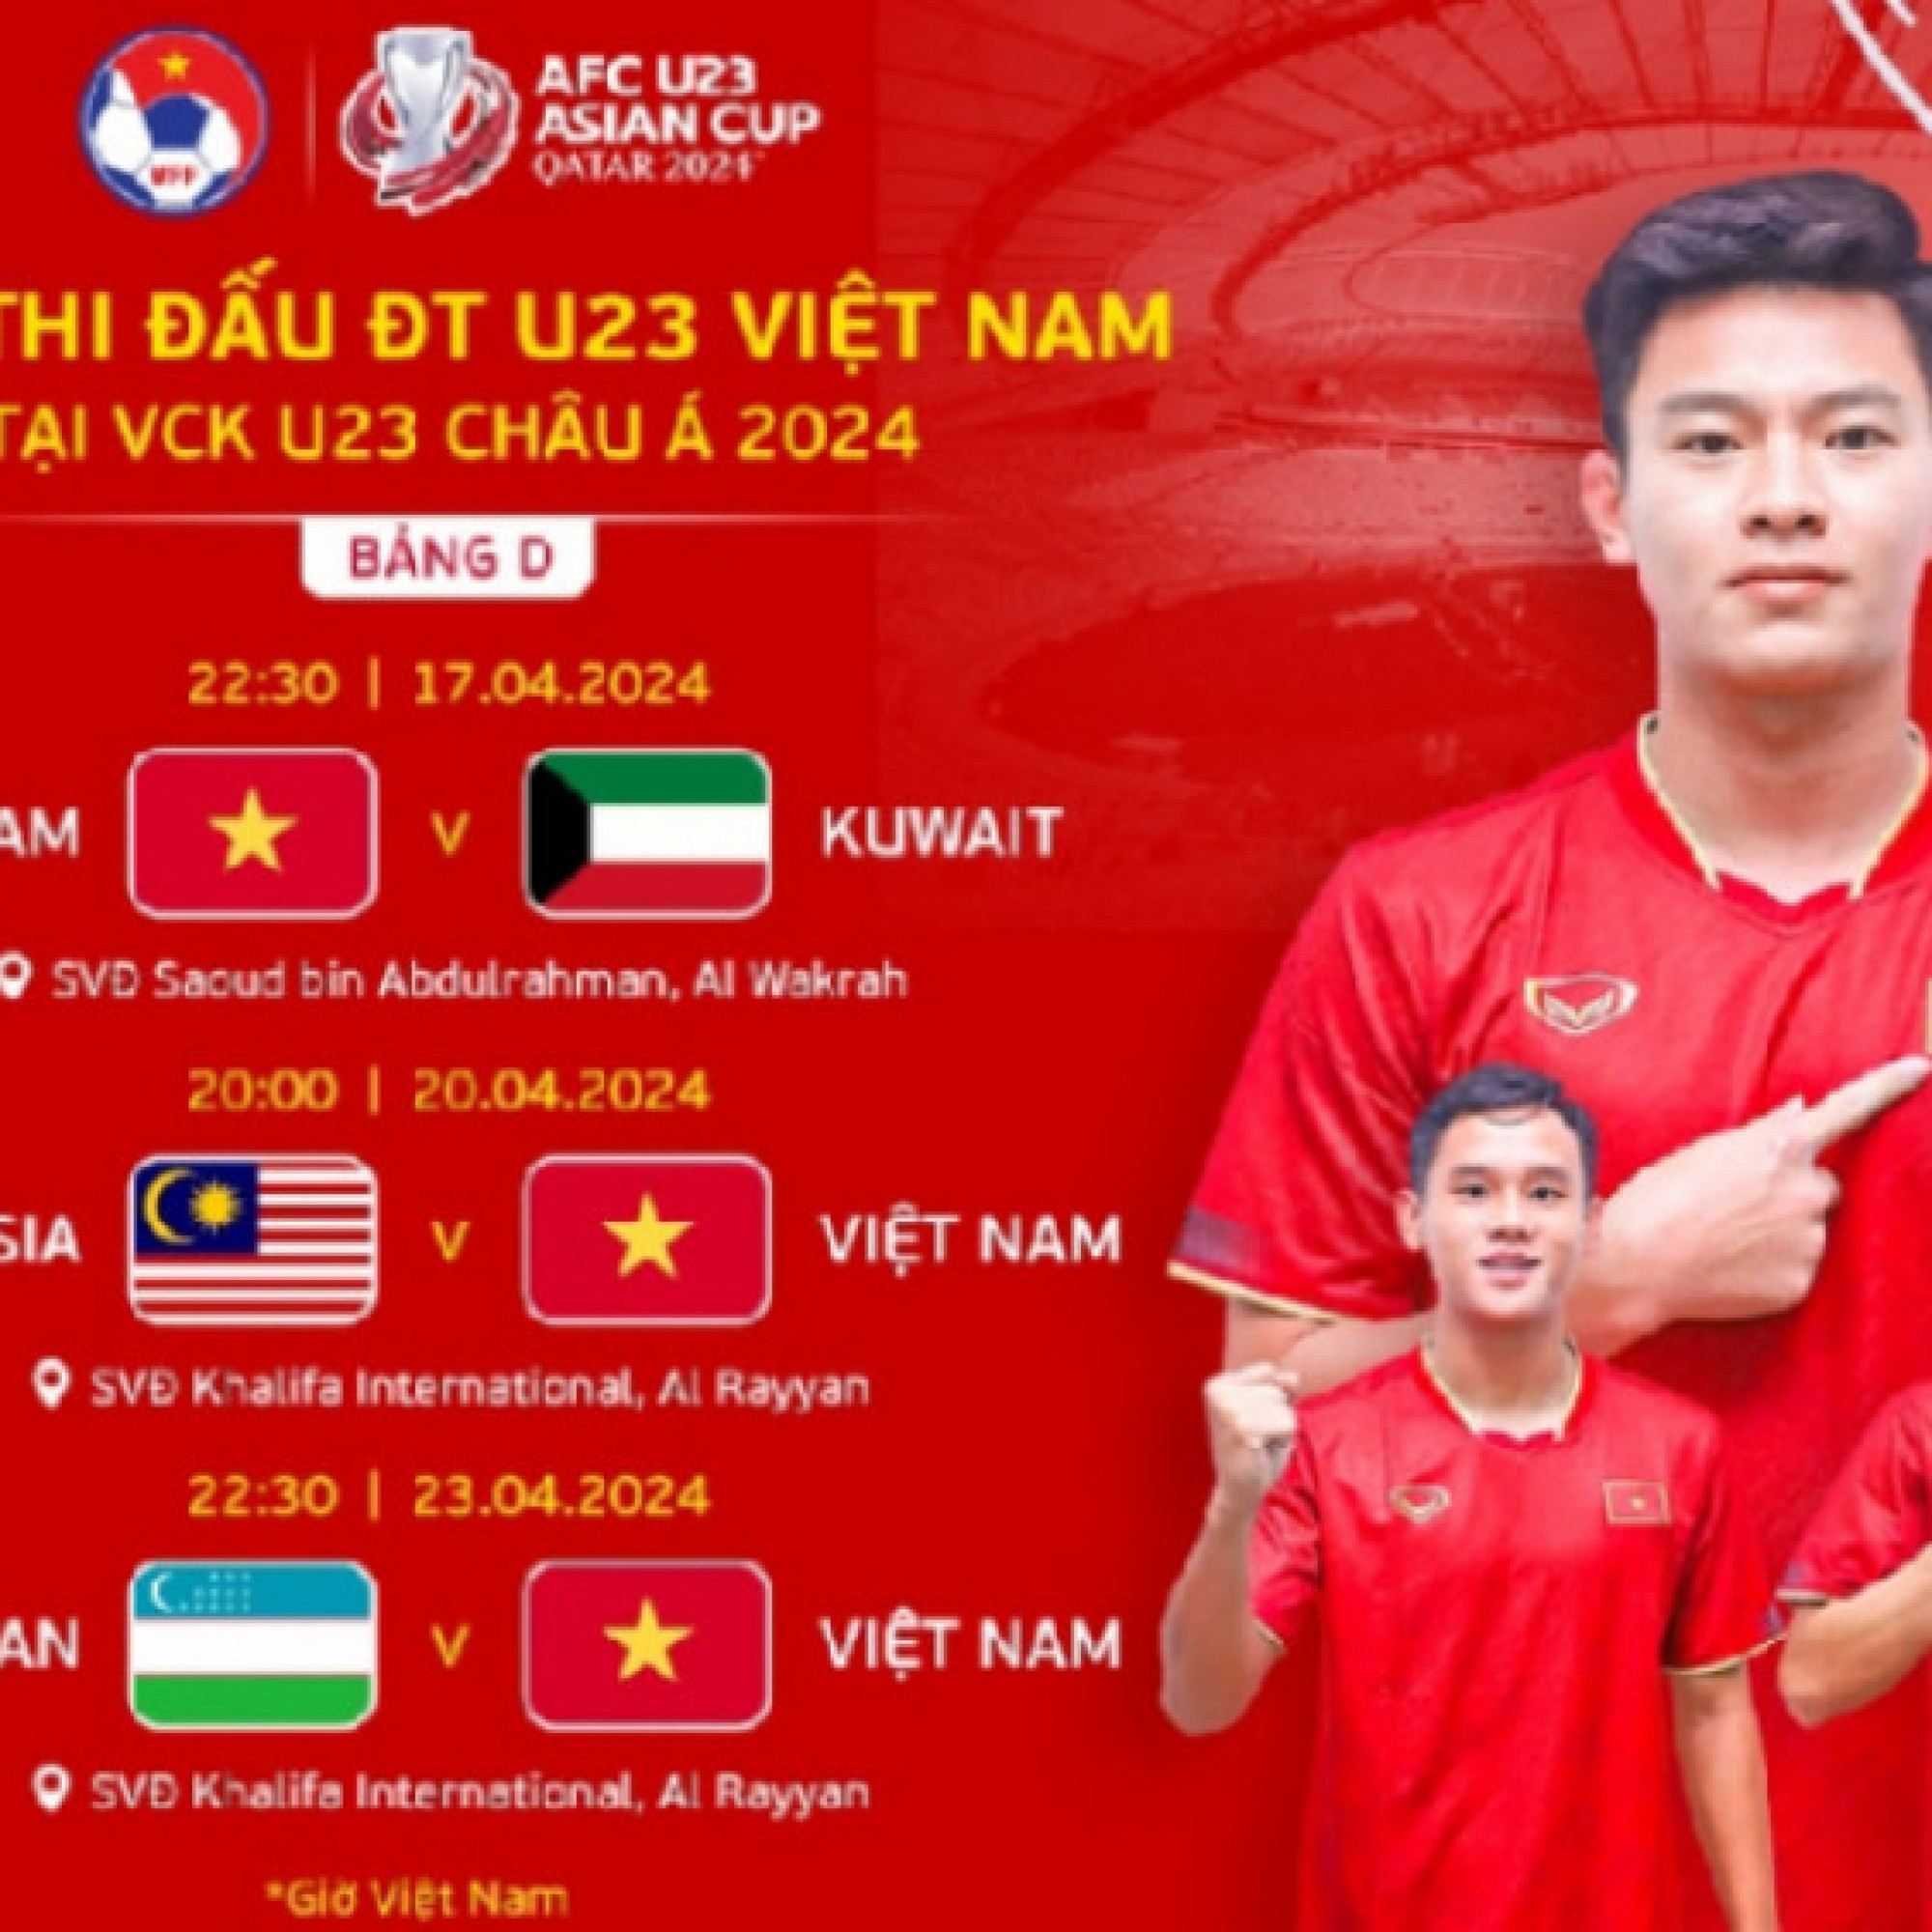  - Lịch thi đấu vòng chung kết U23 châu Á 2024 mới nhất, lịch thi đấu U23 Việt Nam